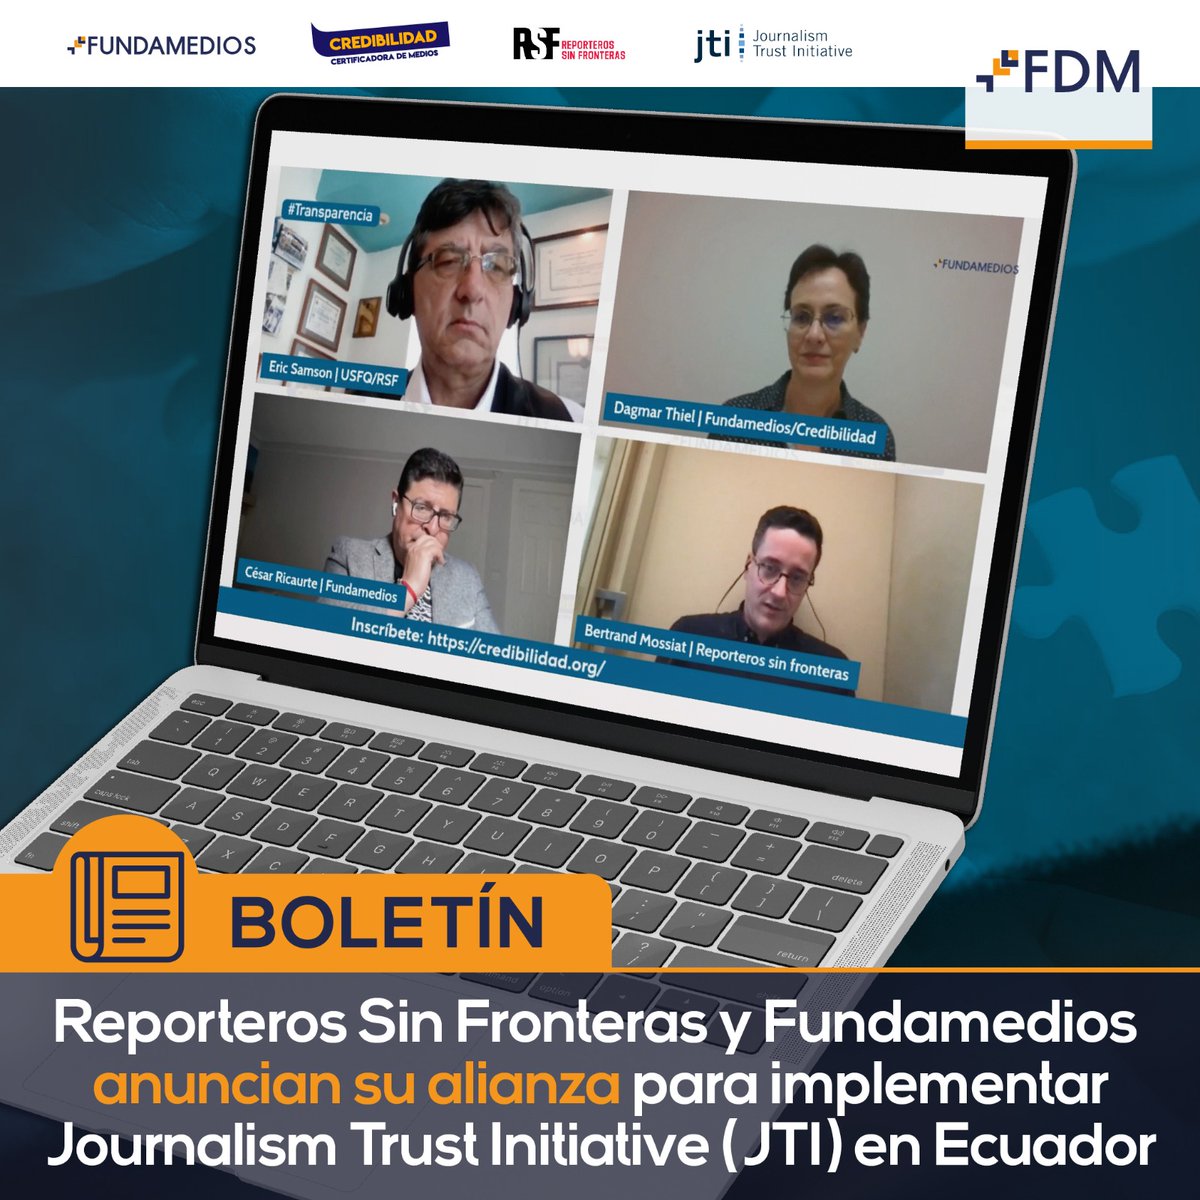 📑 #BOLETÍN | Reporteros Sin Fronteras (@RSF_inter @RSF_esp) y #Fundamedios, dos organizaciones líderes en la promoción de la libertad de prensa y el periodismo independiente, han anunciado su alianza estratégica para el lanzamiento de la Journalism Trust Initiative…